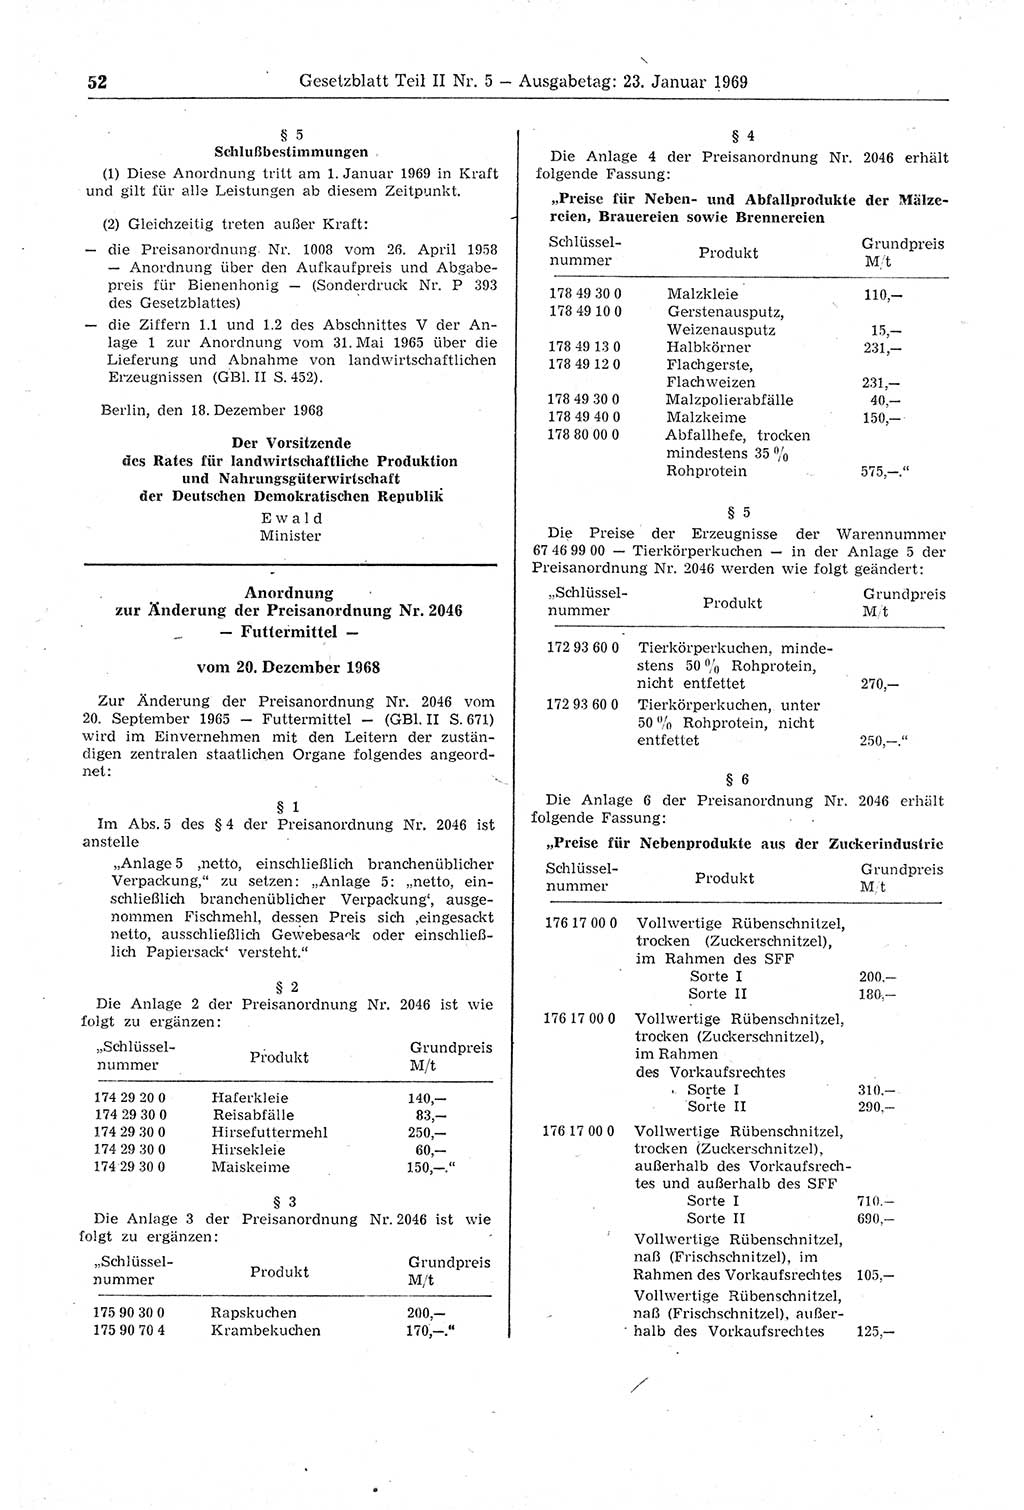 Gesetzblatt (GBl.) der Deutschen Demokratischen Republik (DDR) Teil ⅠⅠ 1969, Seite 52 (GBl. DDR ⅠⅠ 1969, S. 52)